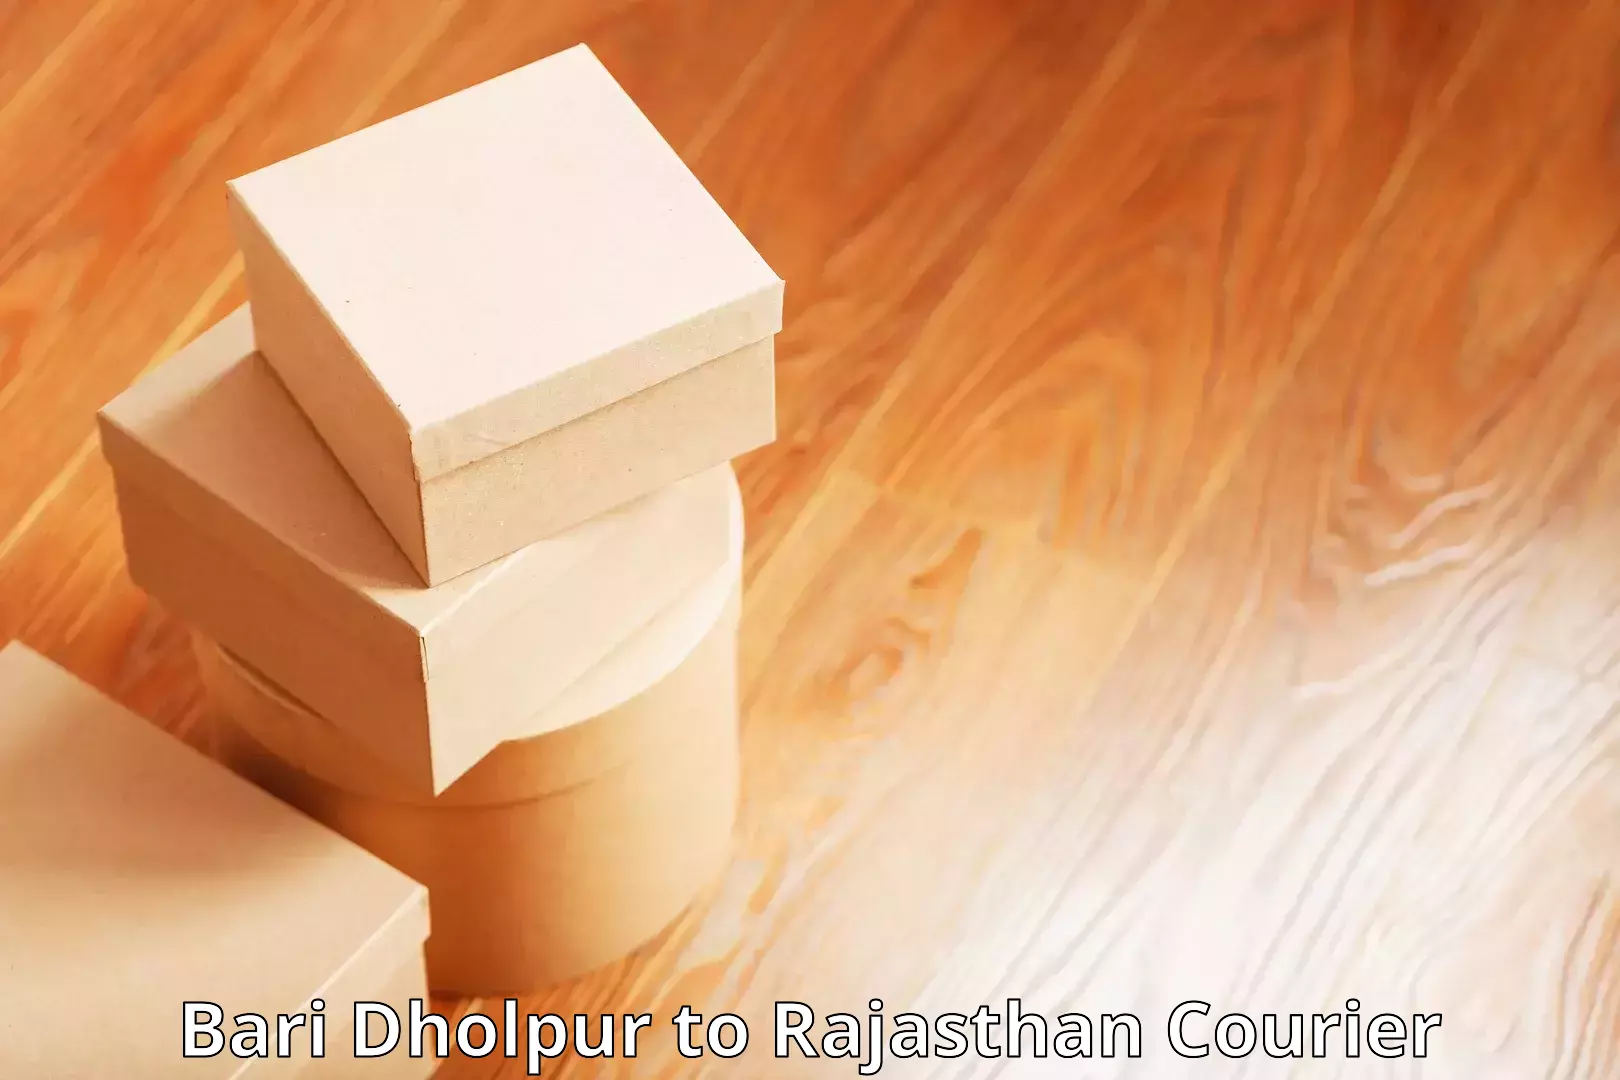 Courier service comparison Bari Dholpur to Dhorimana